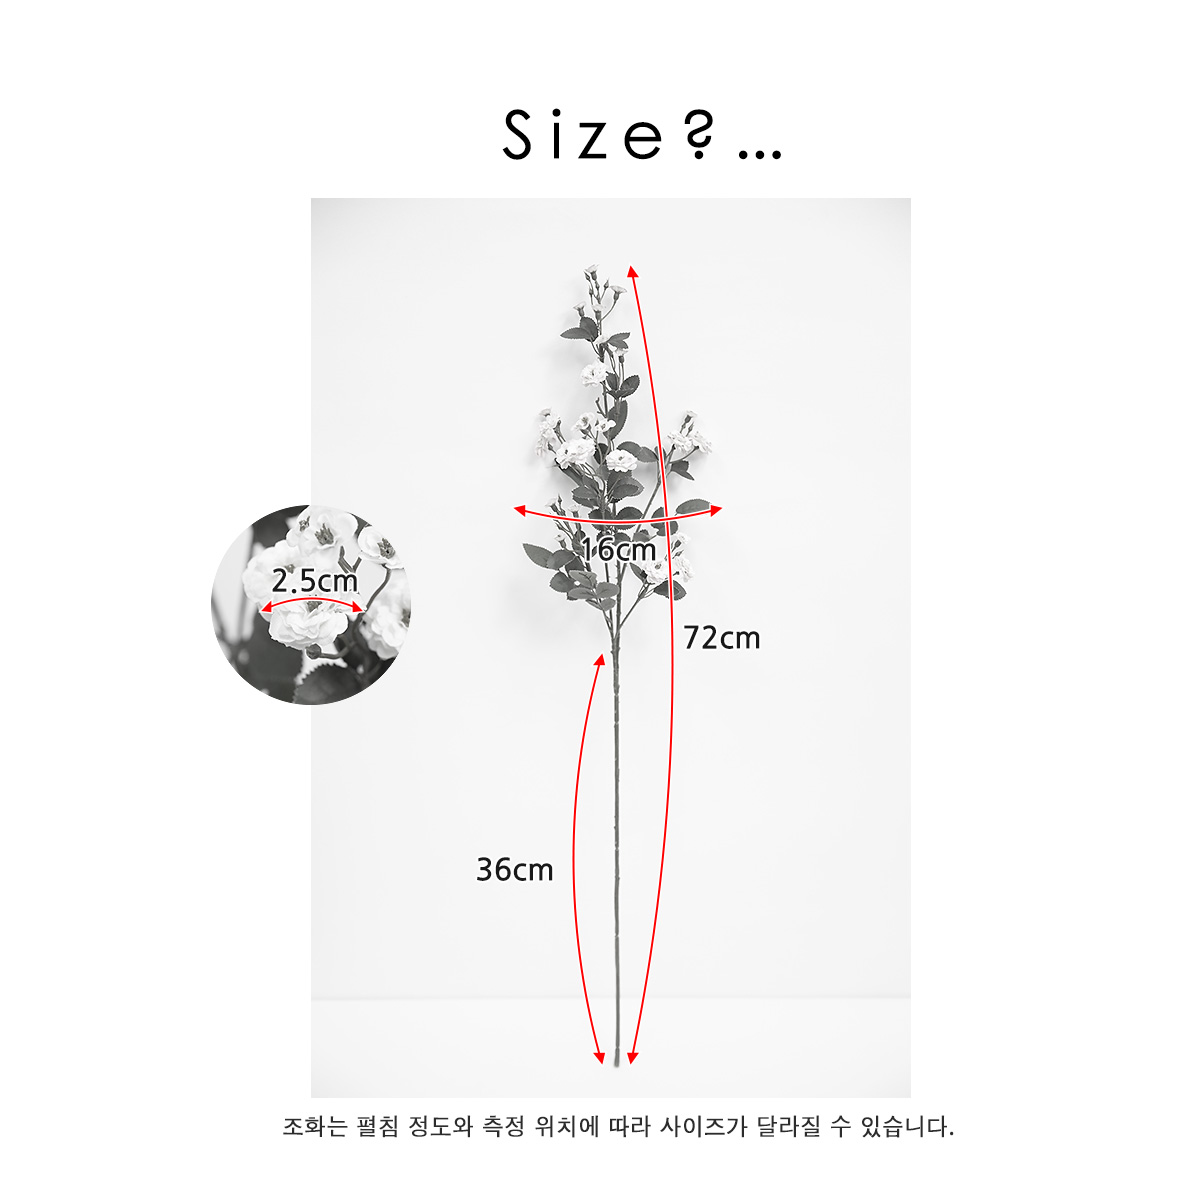 실크플라워 재스민 꽃 가지 72cm, 사이즈보기